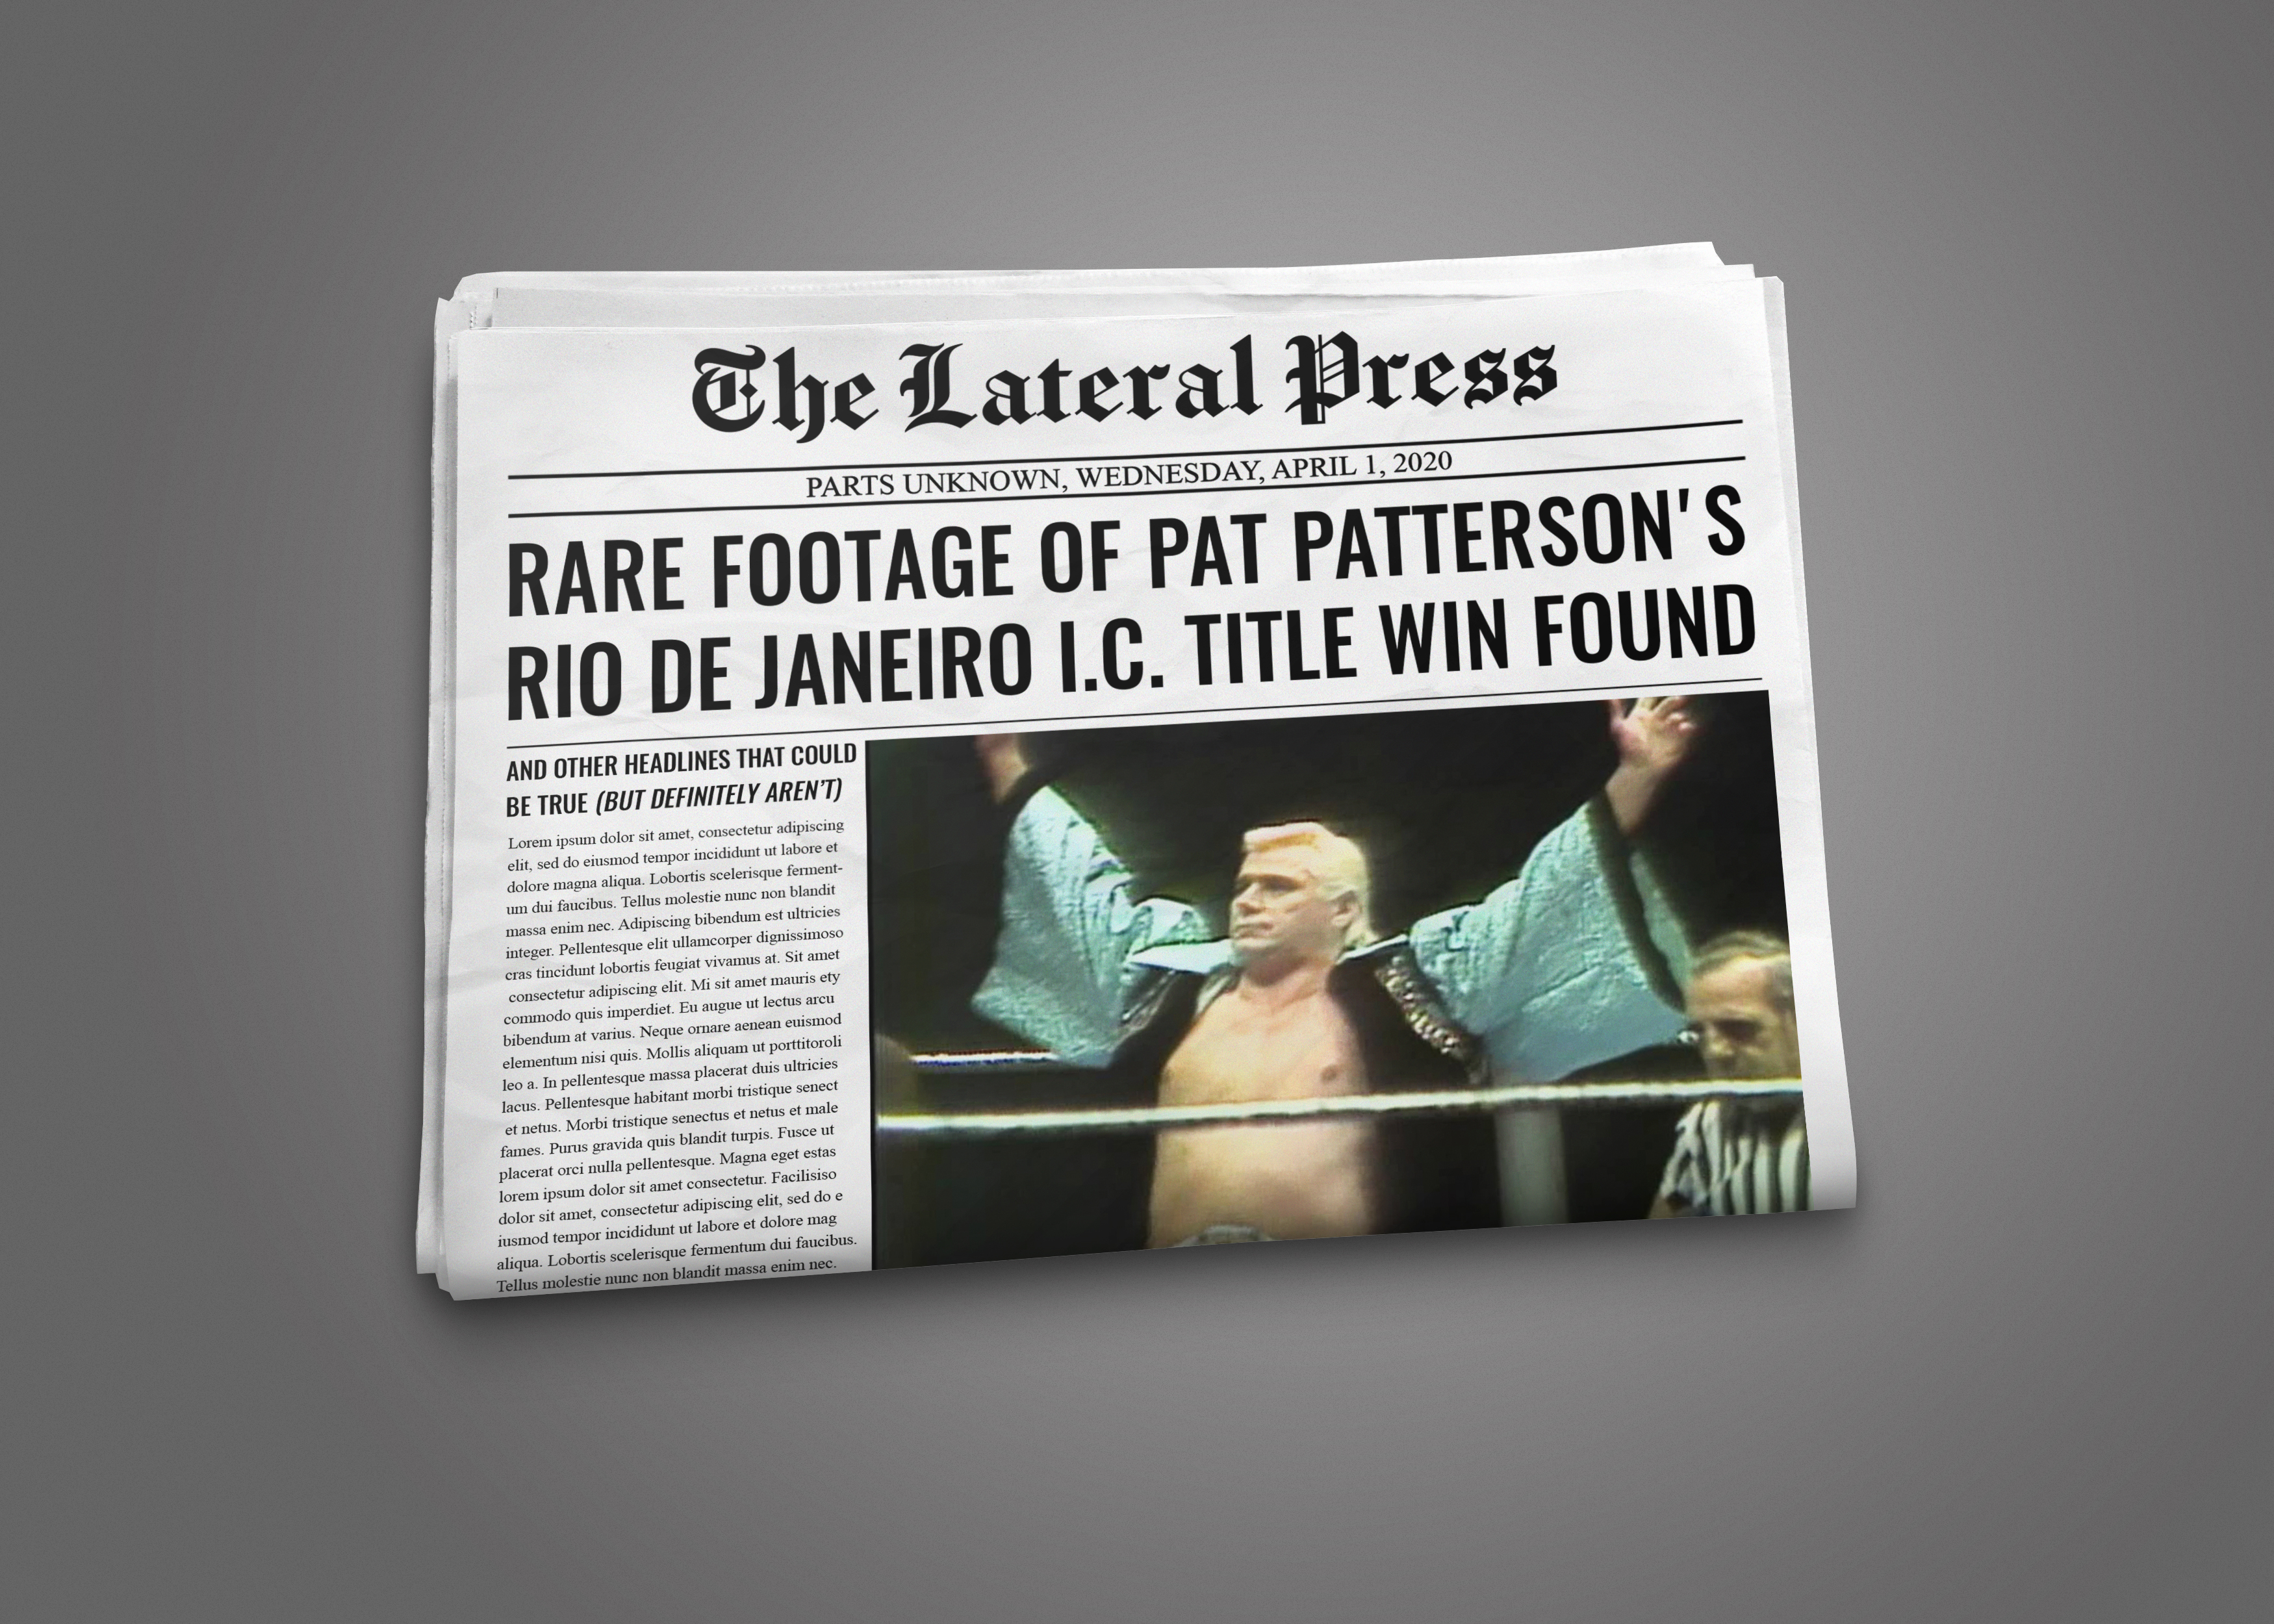 Pat Patterson